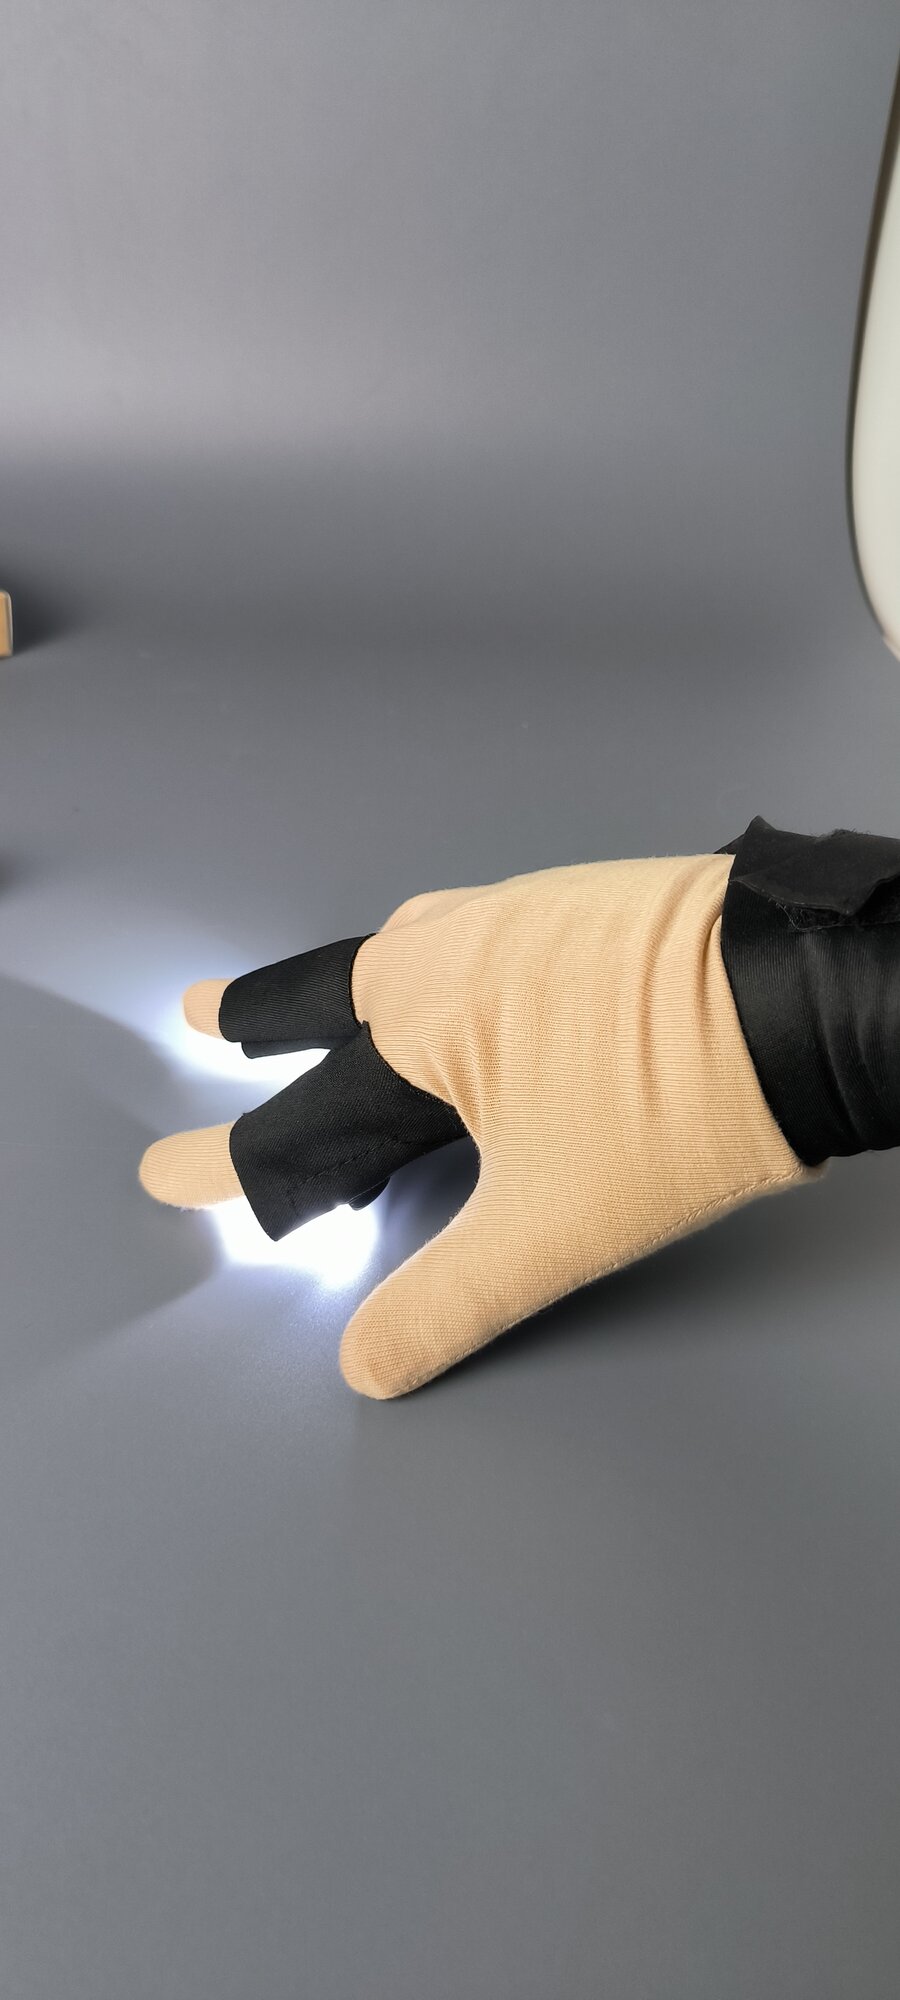 Фонарь-перчатка duwi со встроенной подсветкой, комплект 2 шт. Без бренда - фото №17